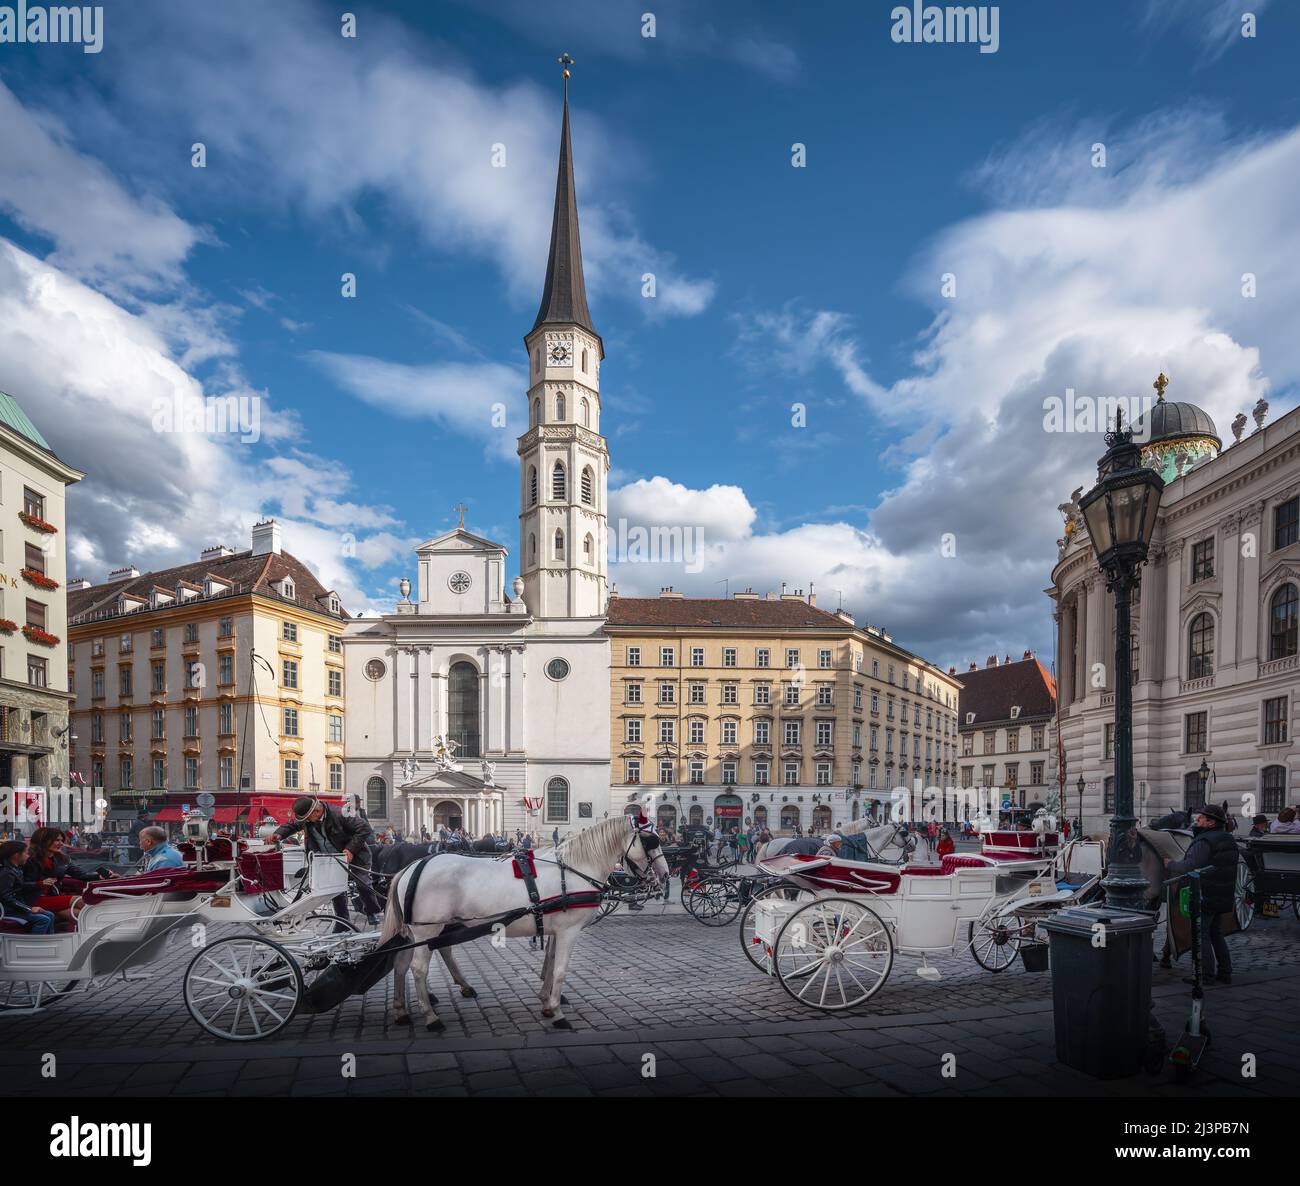 Plaza de San Miguel (Michaelerplatz) con la Iglesia de San Miguel y carruajes tirados por caballos (fiakers) - Viena, Austria Foto de stock